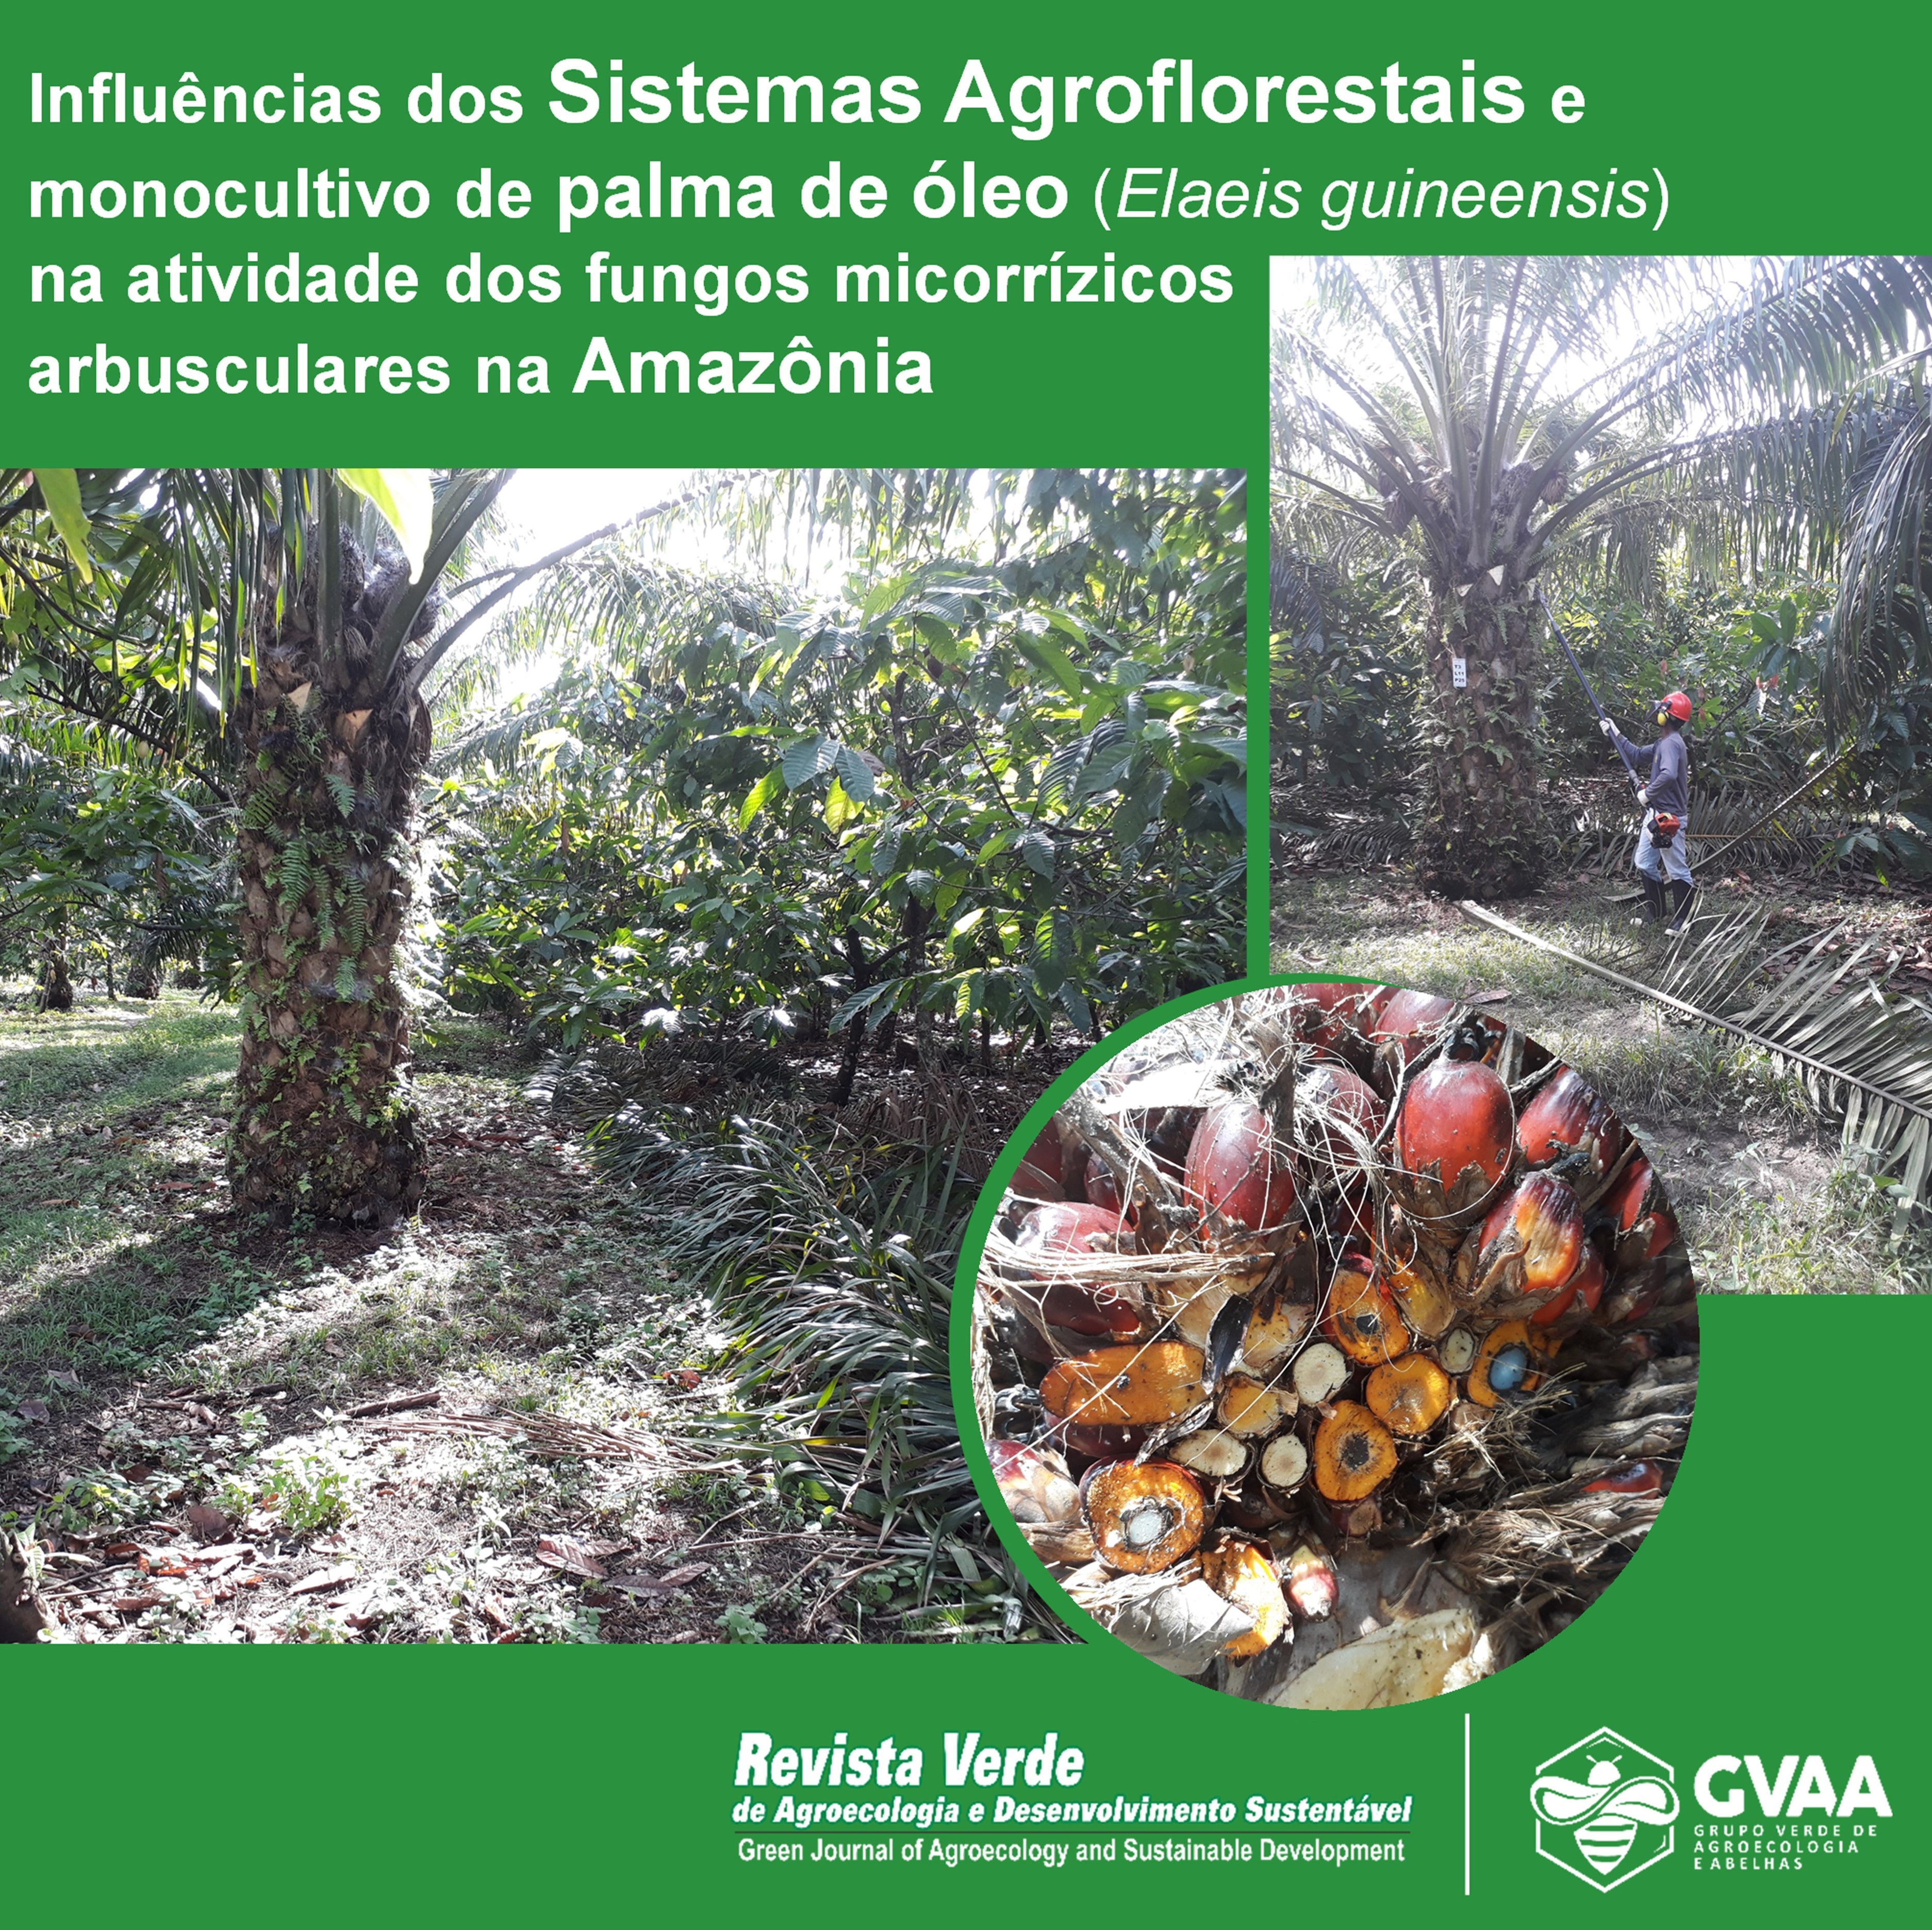 Influências dos Sistemas Agroflorestais e monocultivo de palma de óleo (Elaeis guineensis) na atividade dos fungos micorrízicos arbusculares na Amazônia